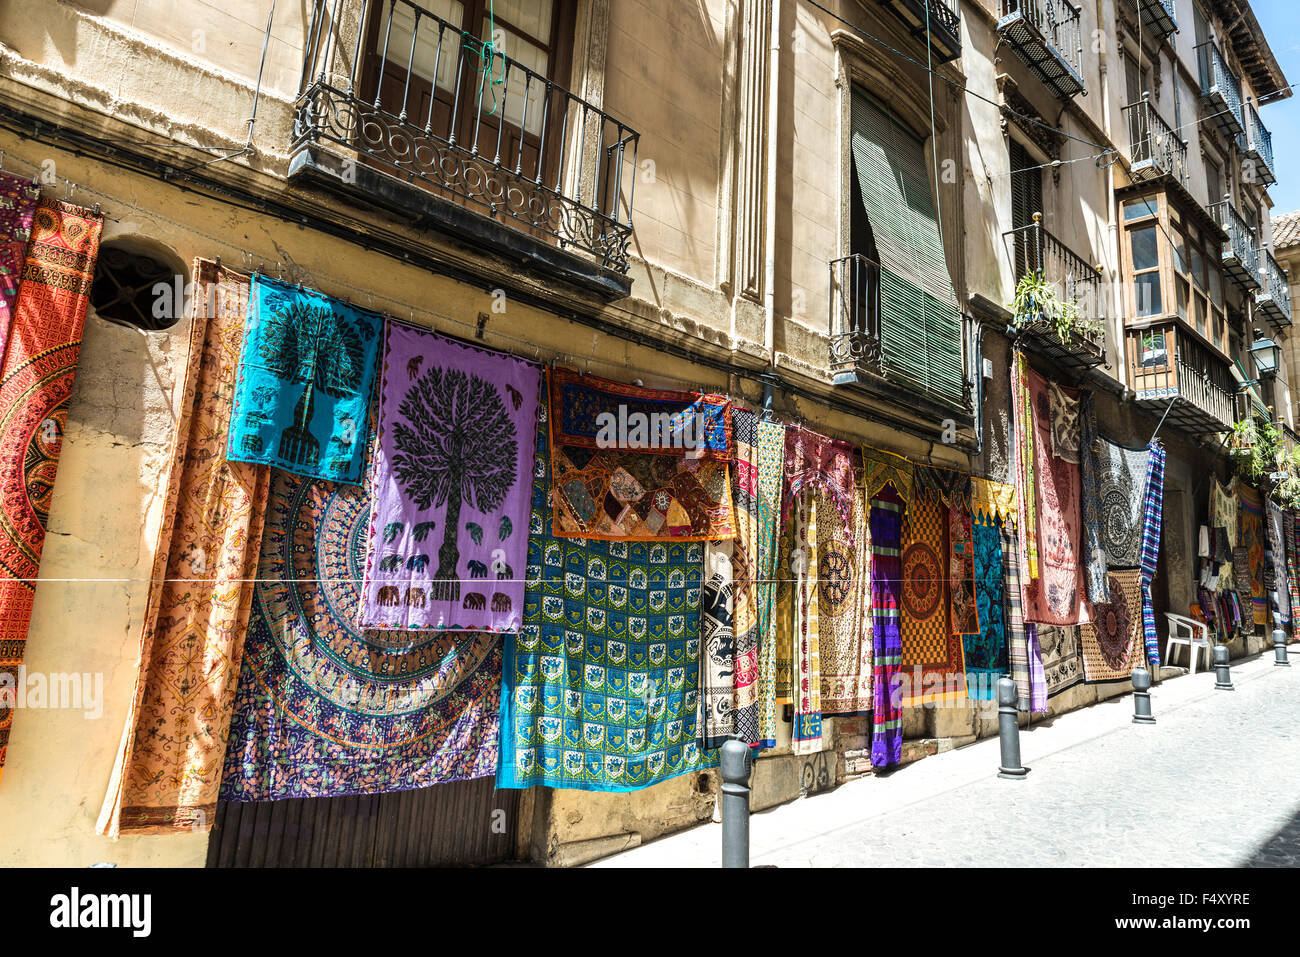 Boutique de tapis dans la vieille ville de Grenade, Espagne Photo Stock -  Alamy